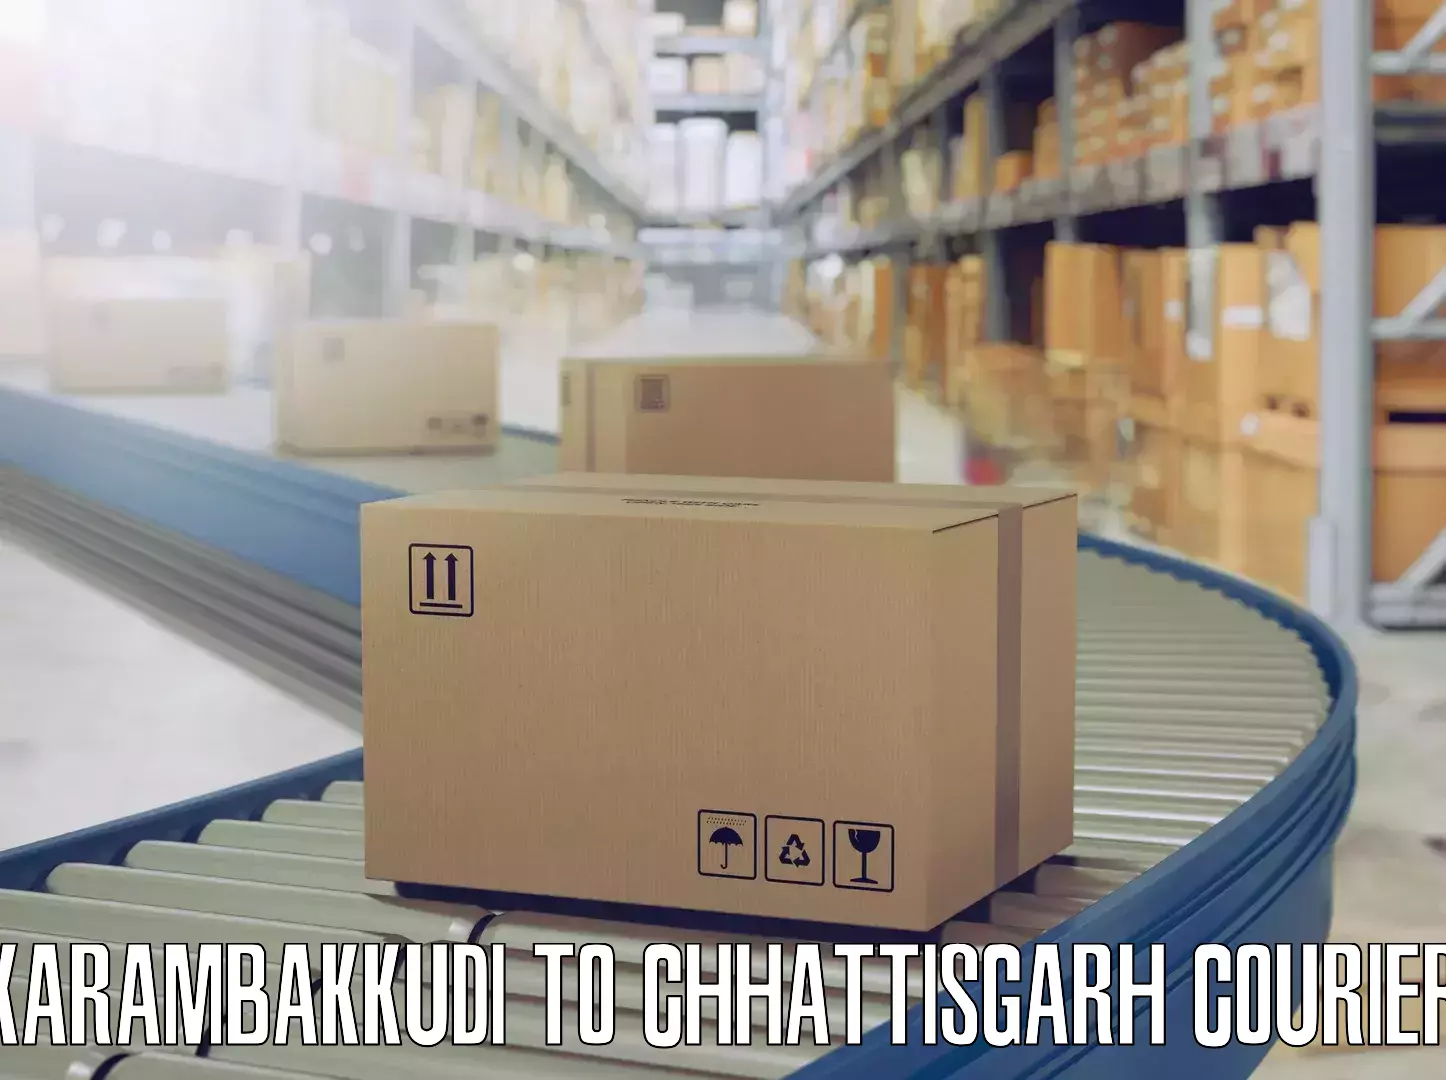 Household goods movers and packers Karambakkudi to Chhattisgarh